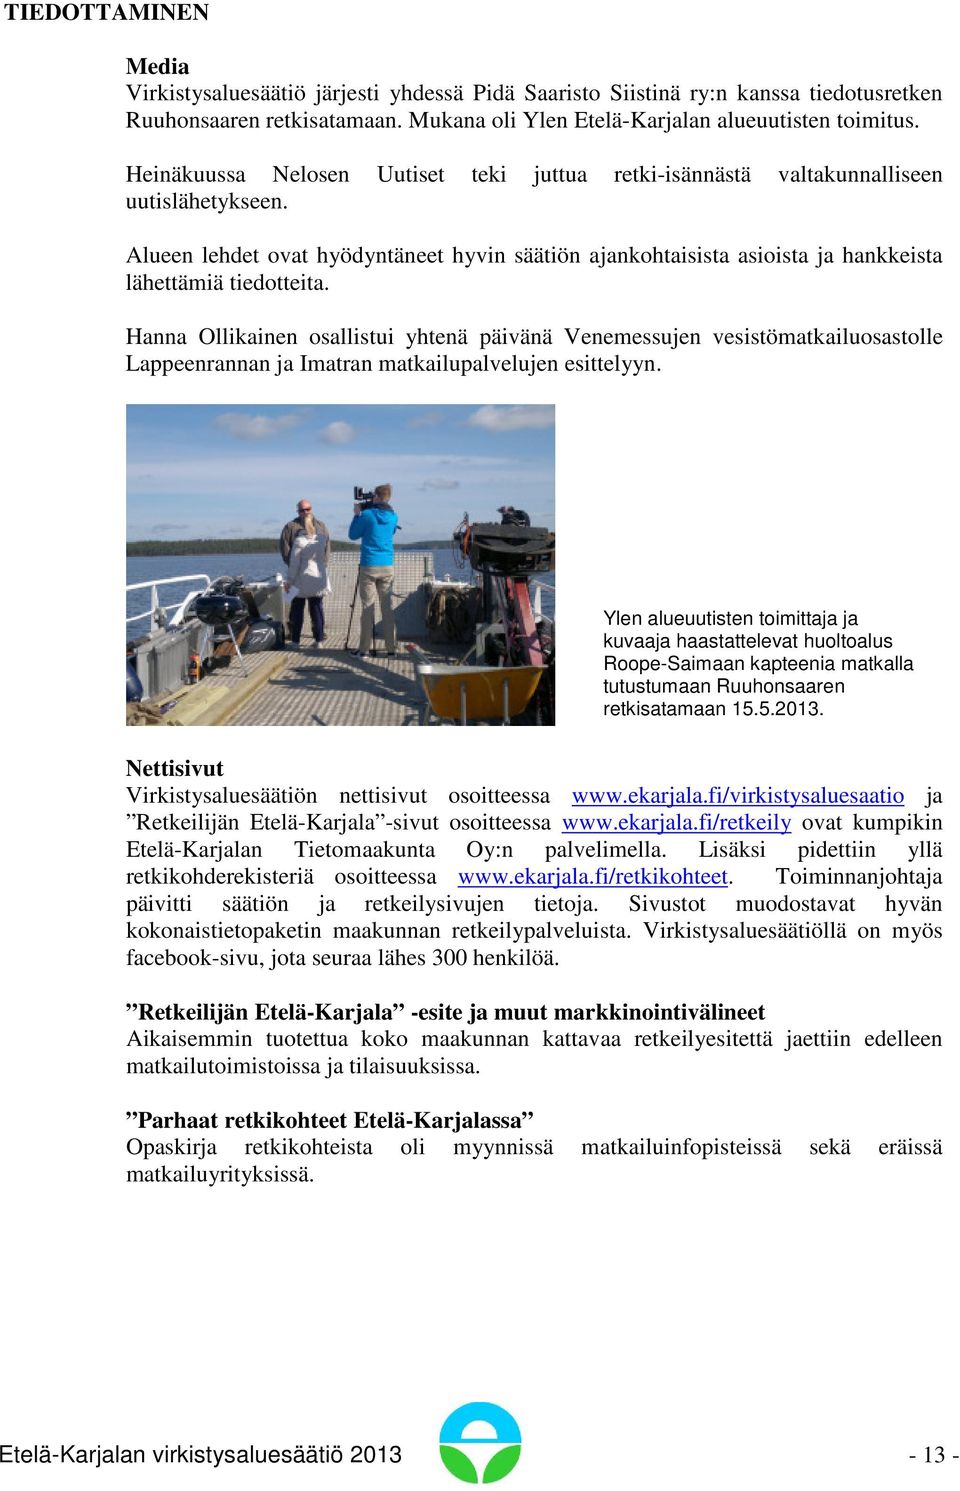 Hanna Ollikainen osallistui yhtenä päivänä Venemessujen vesistömatkailuosastolle Lappeenrannan ja Imatran matkailupalvelujen esittelyyn.